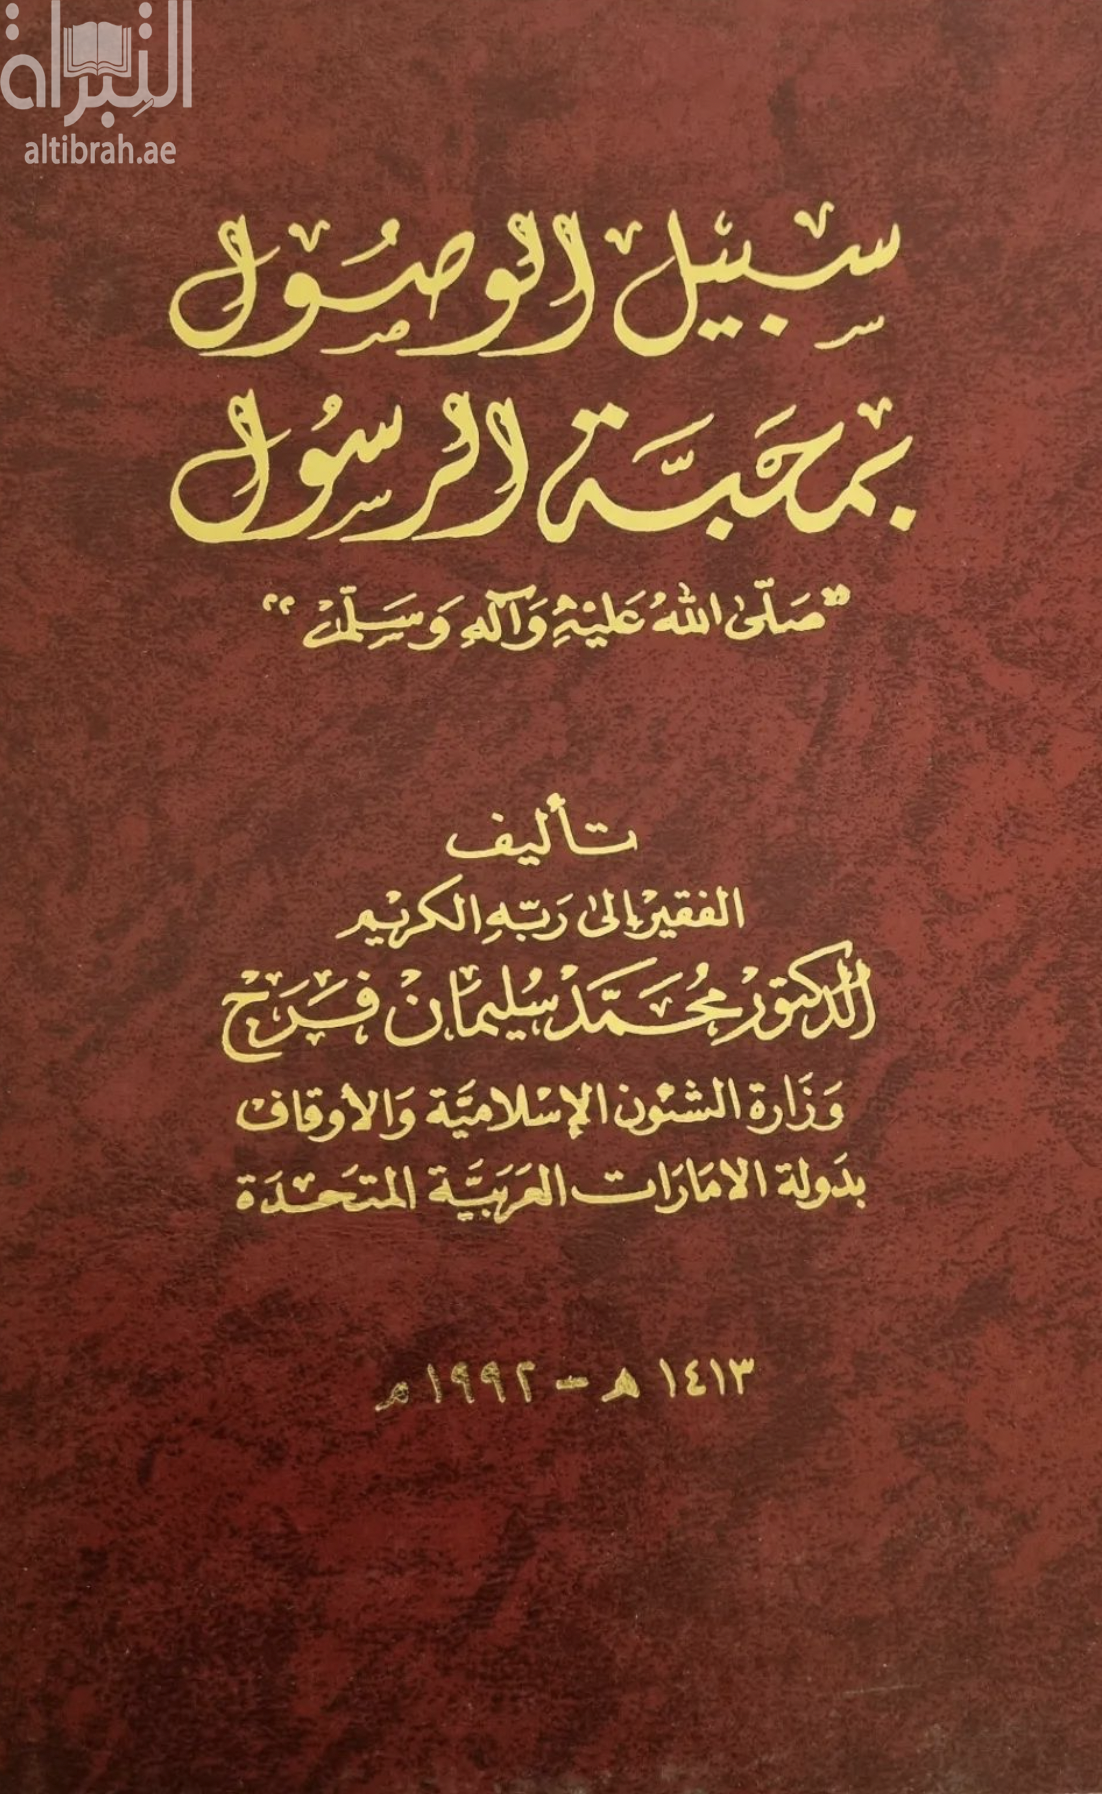 غلاف كتاب سبيل الوصول بمحبة الرسول - صلى الله عليه وآله وسلم -